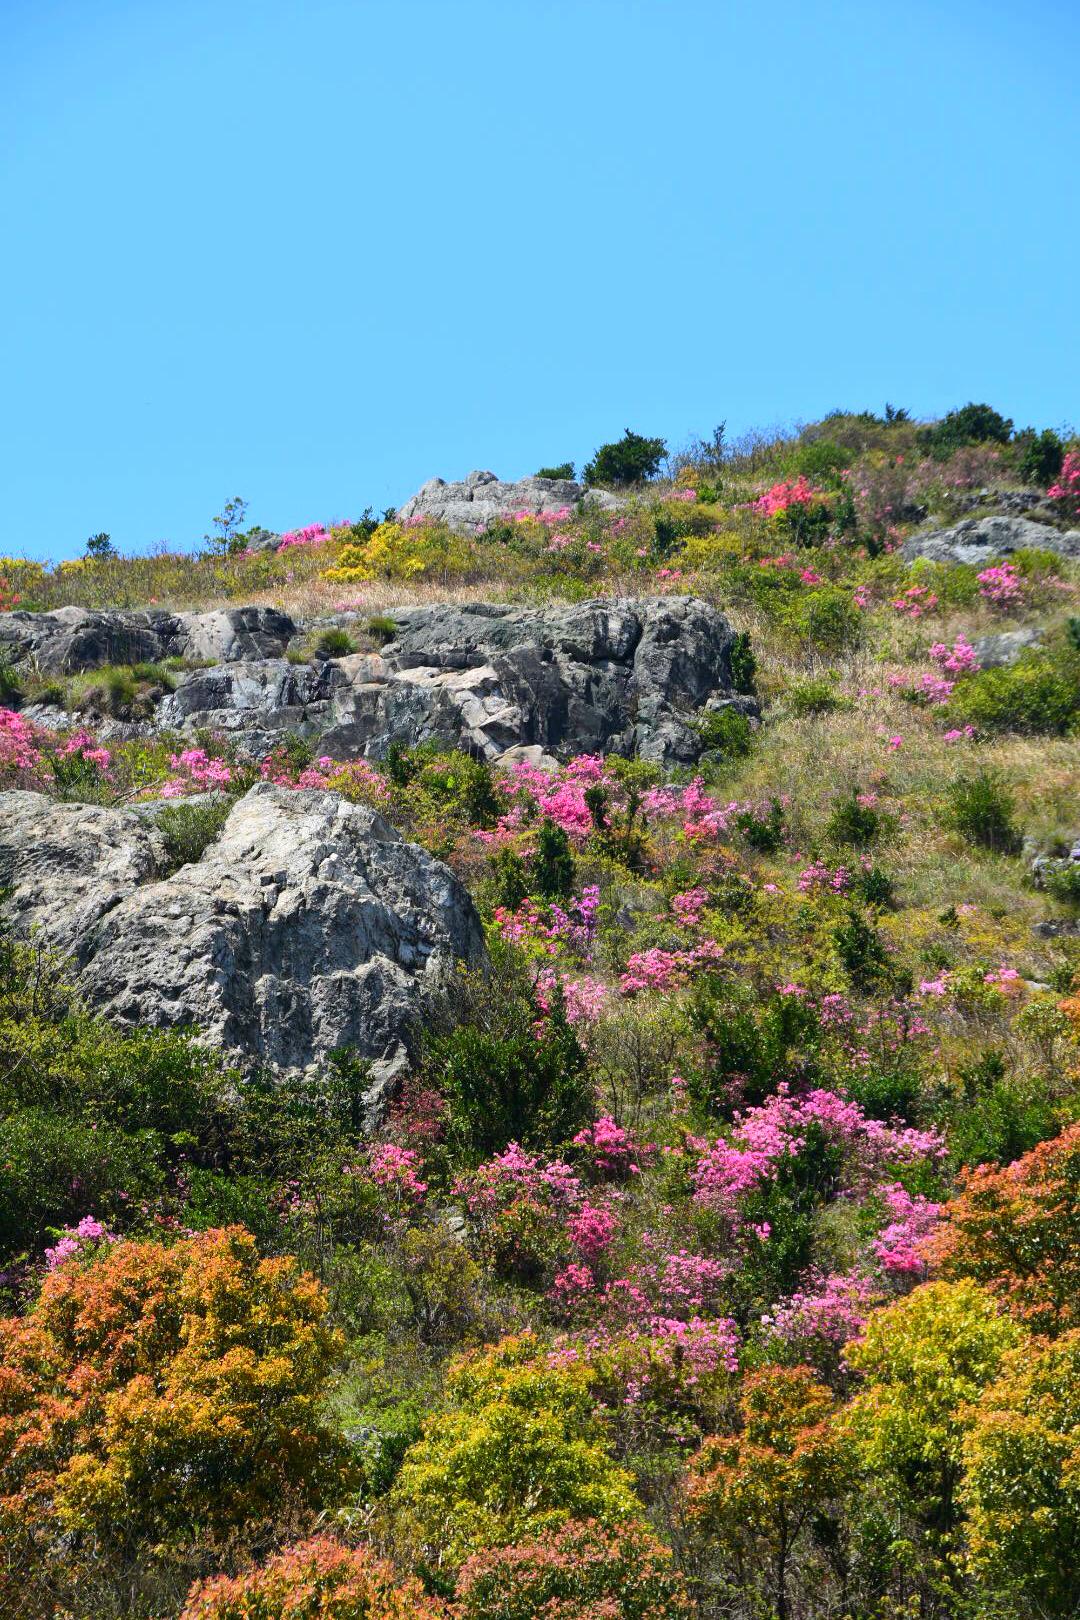 清明天气特好,乌坑满山粉色的杜鹃花与蓝天相映衬特别